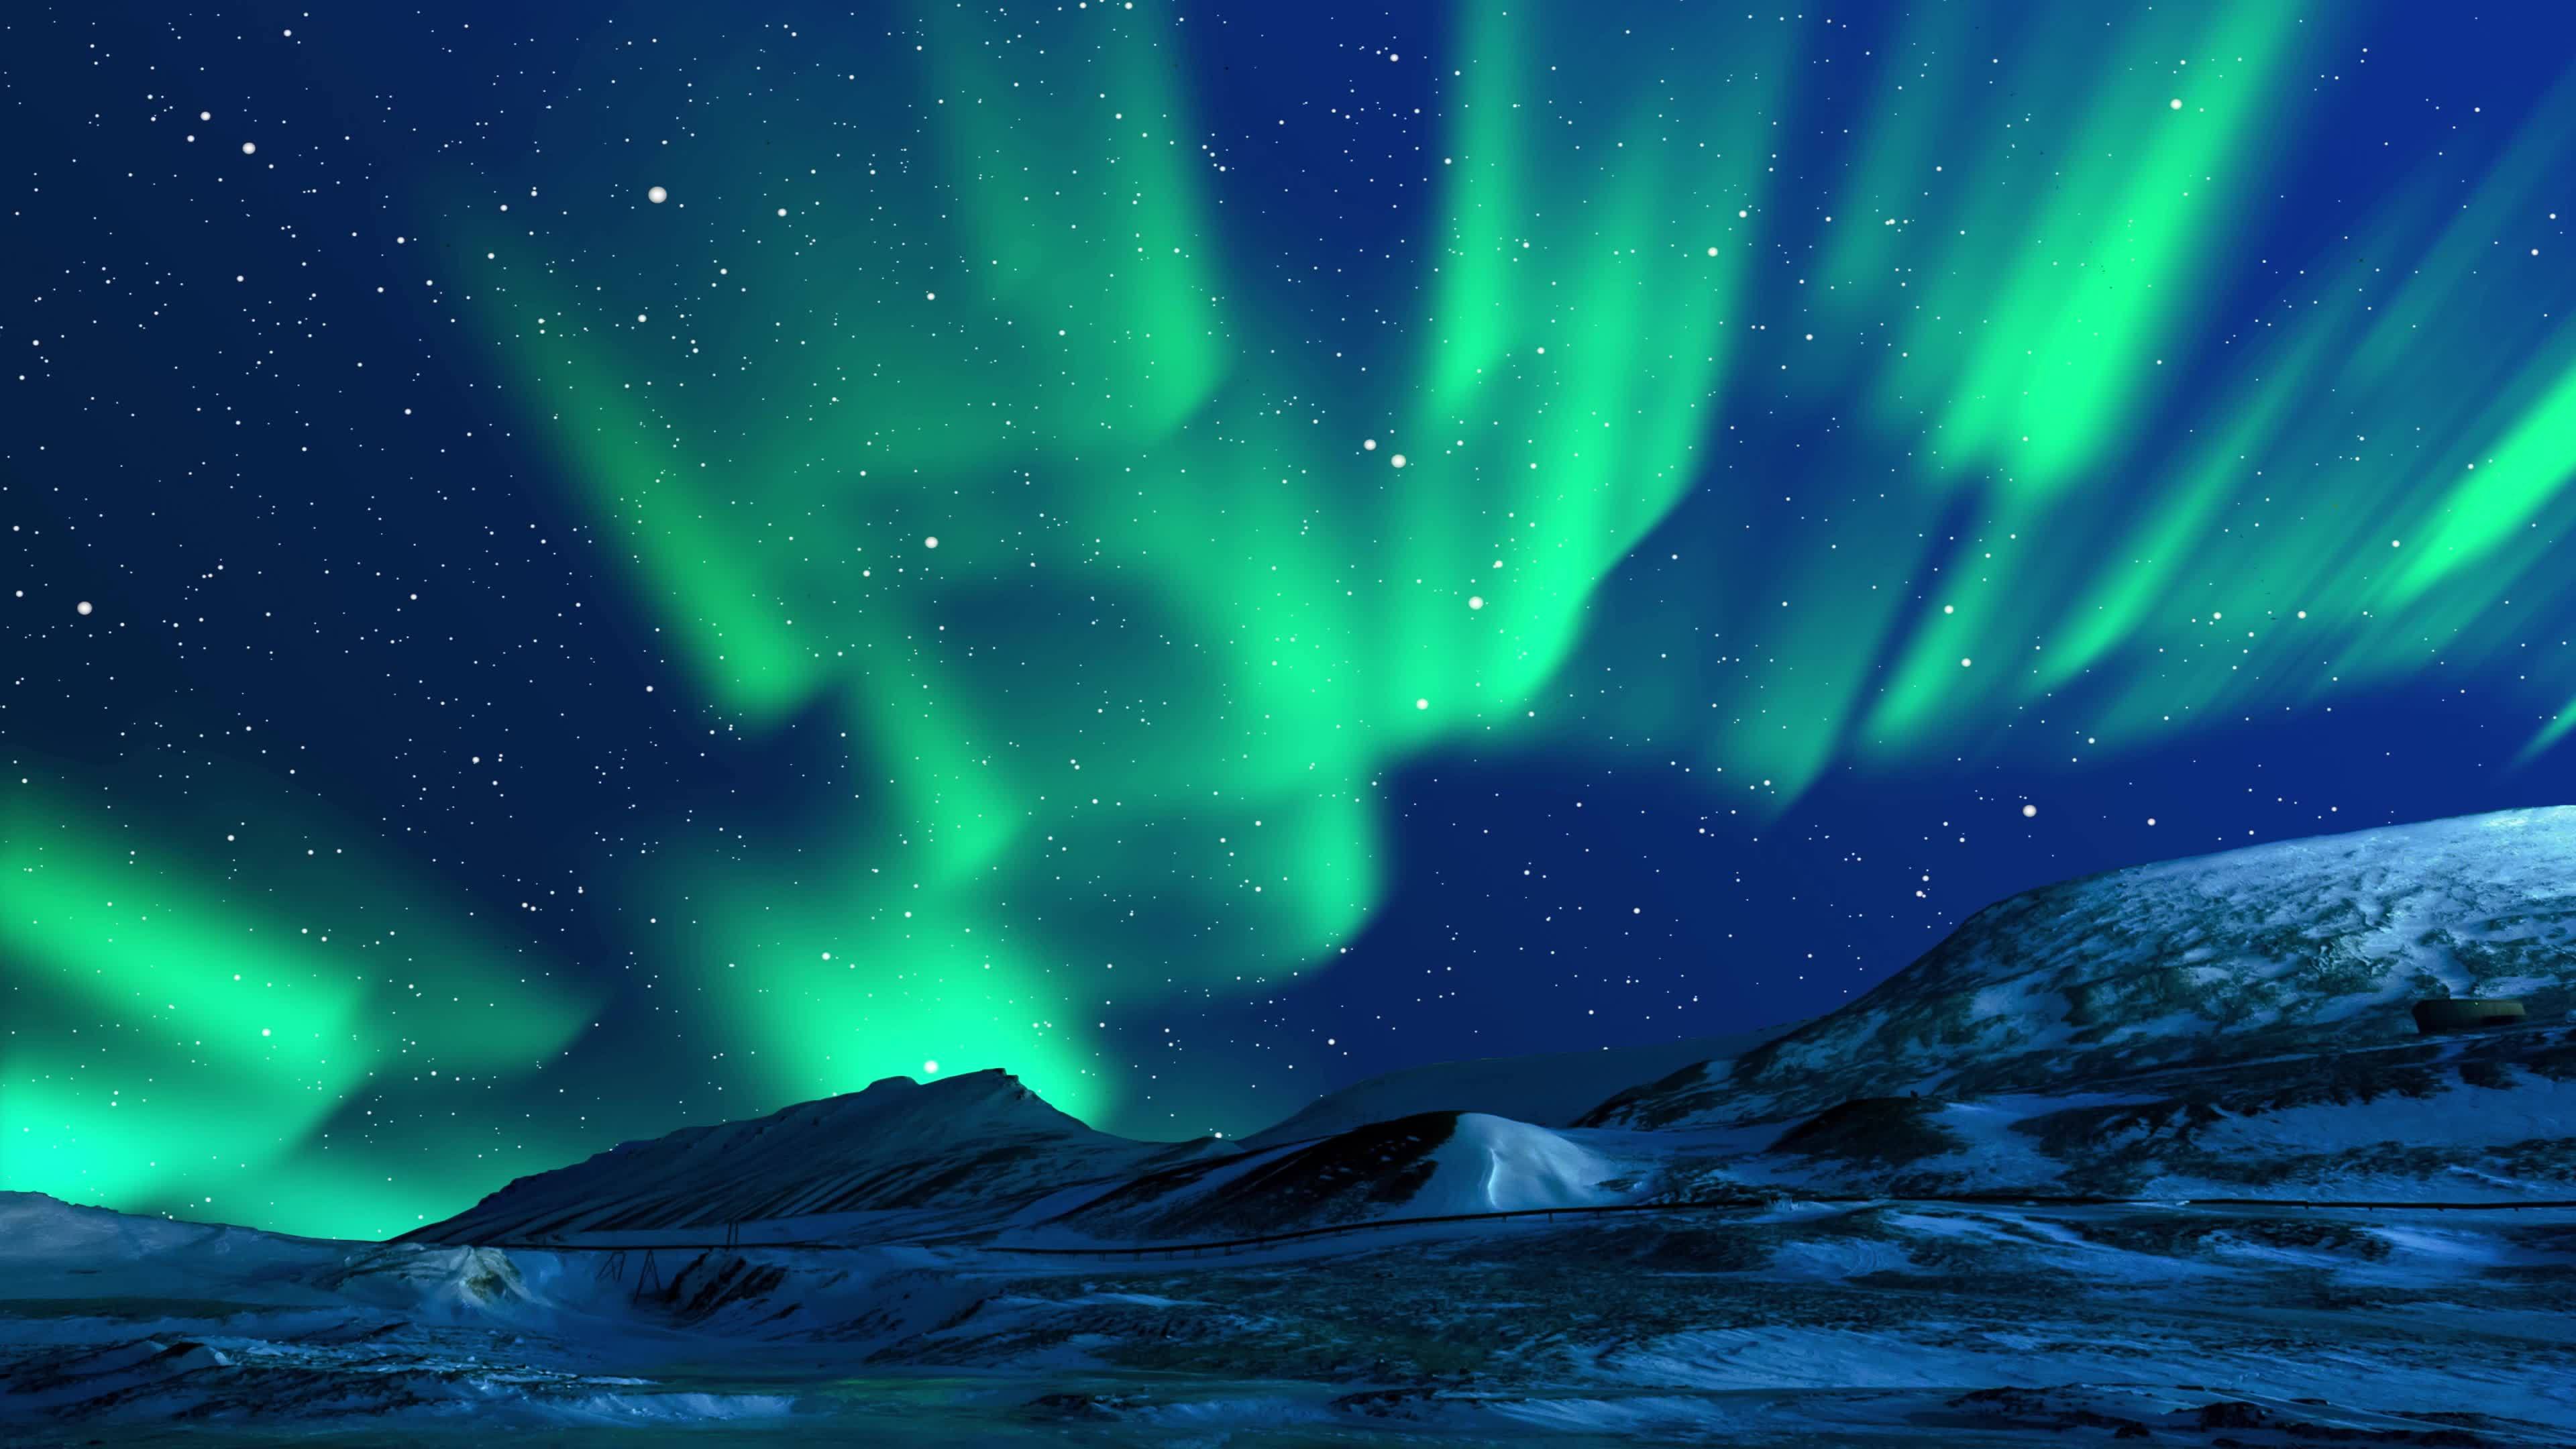 Hãy thưởng thức những ánh sáng phía Bắc rực rỡ, với những dải sáng màu mỹ thuật khác nhau và sự lặng lẽ tuyệt đẹp của thiên nhiên.